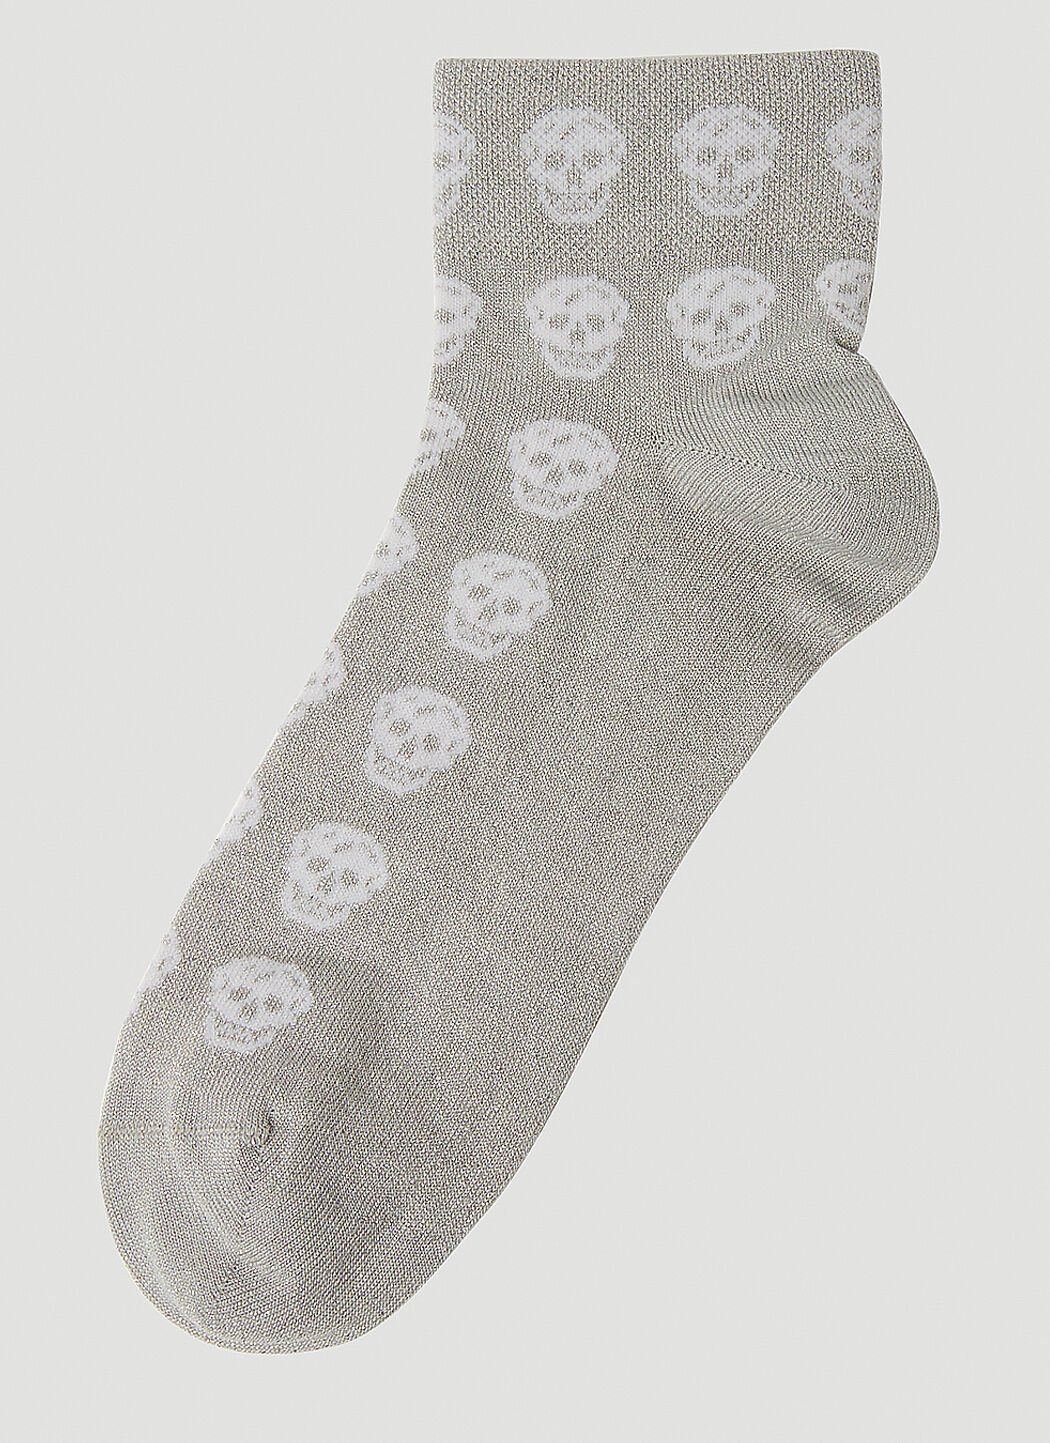 Alexander McQueen Short Skull Socks Red amq0252035